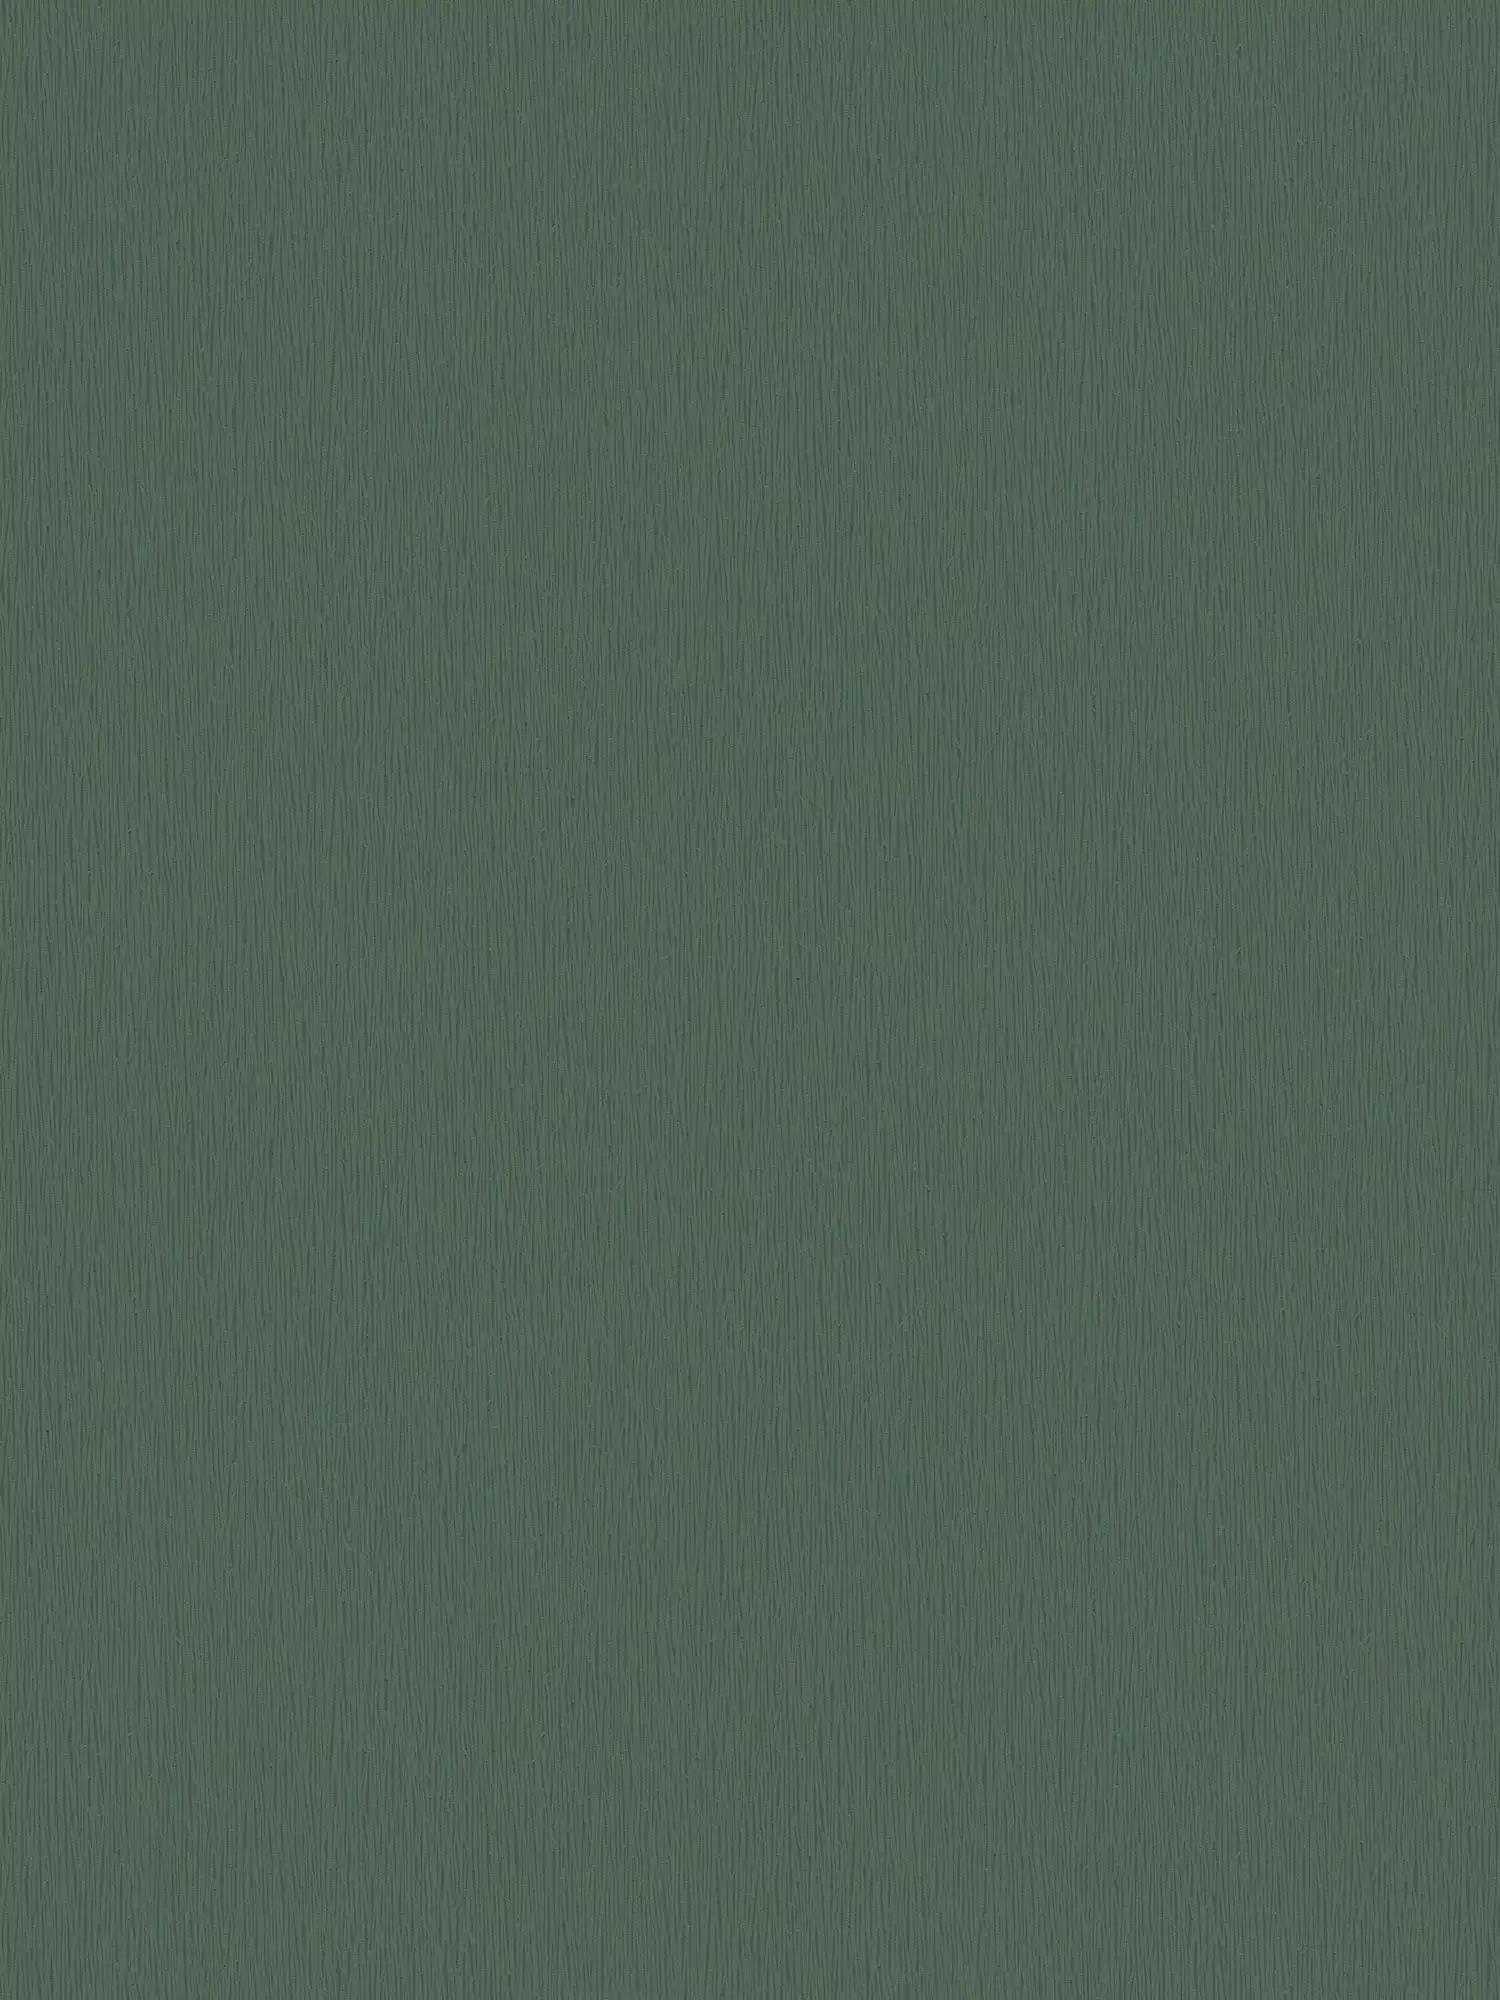 Papel pintado no tejido de color verde oscuro con textura natural tono sobre tono
